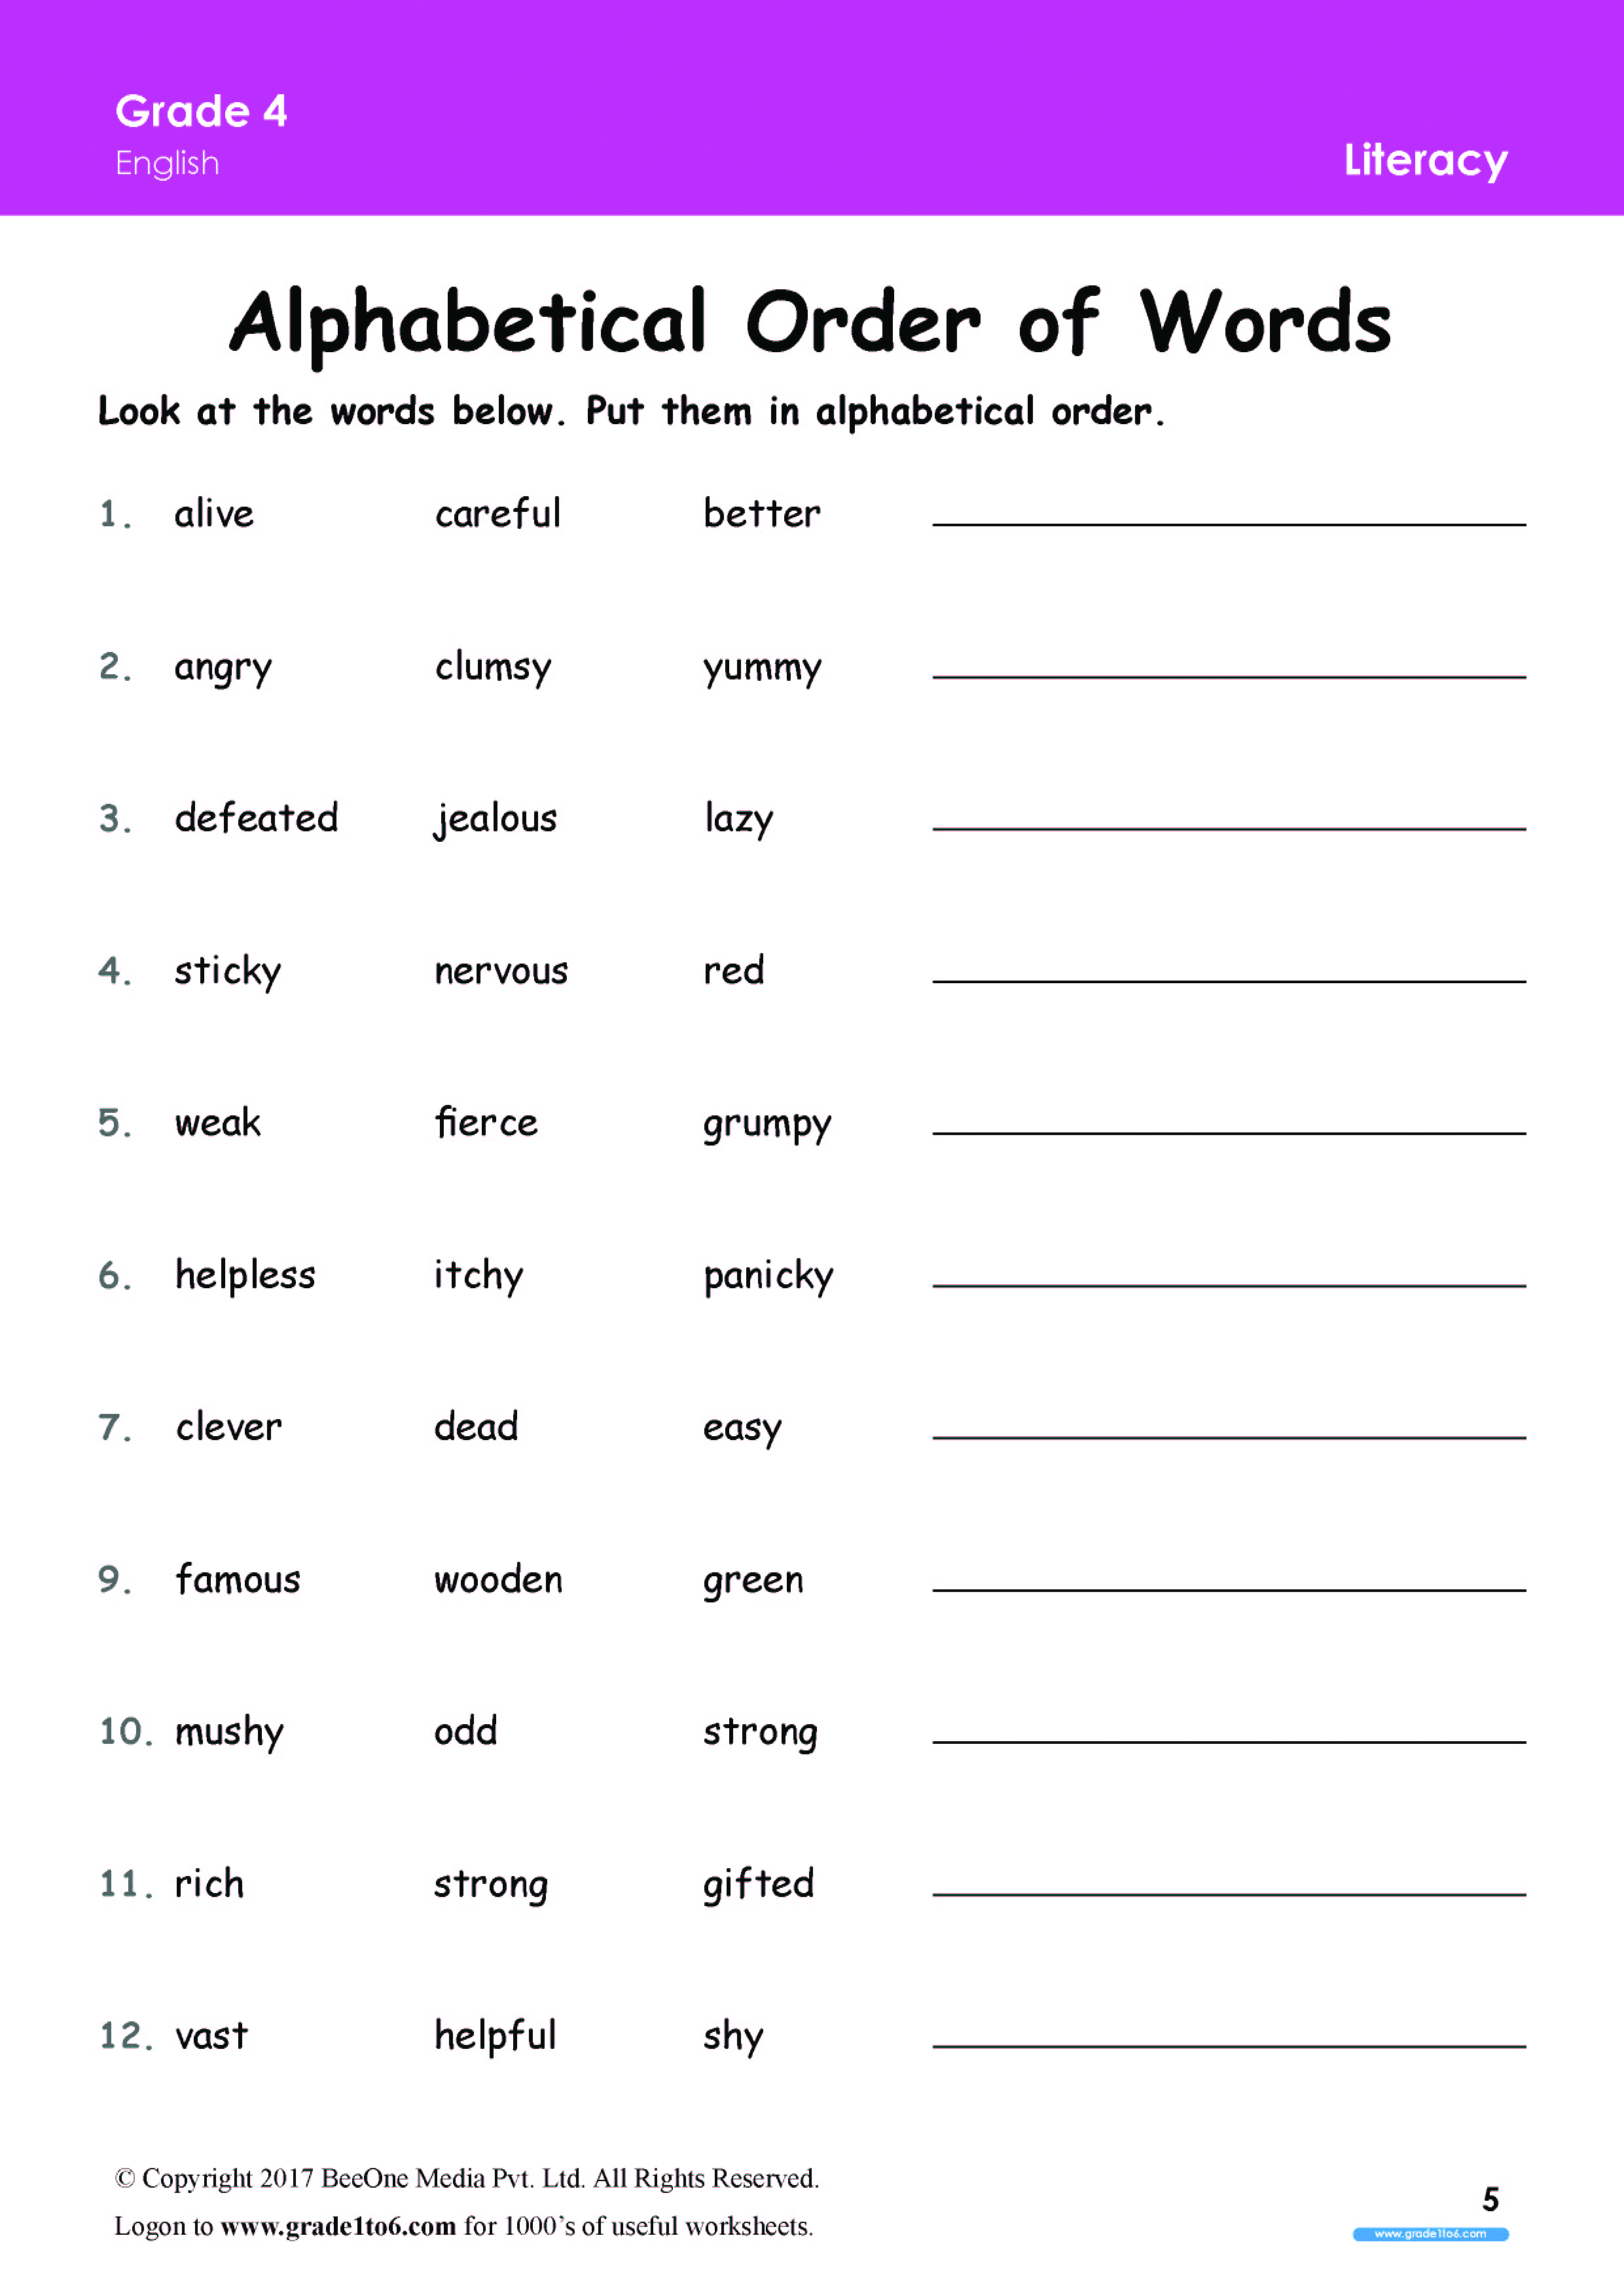 alphabetical-order-worksheets-for-grade-6